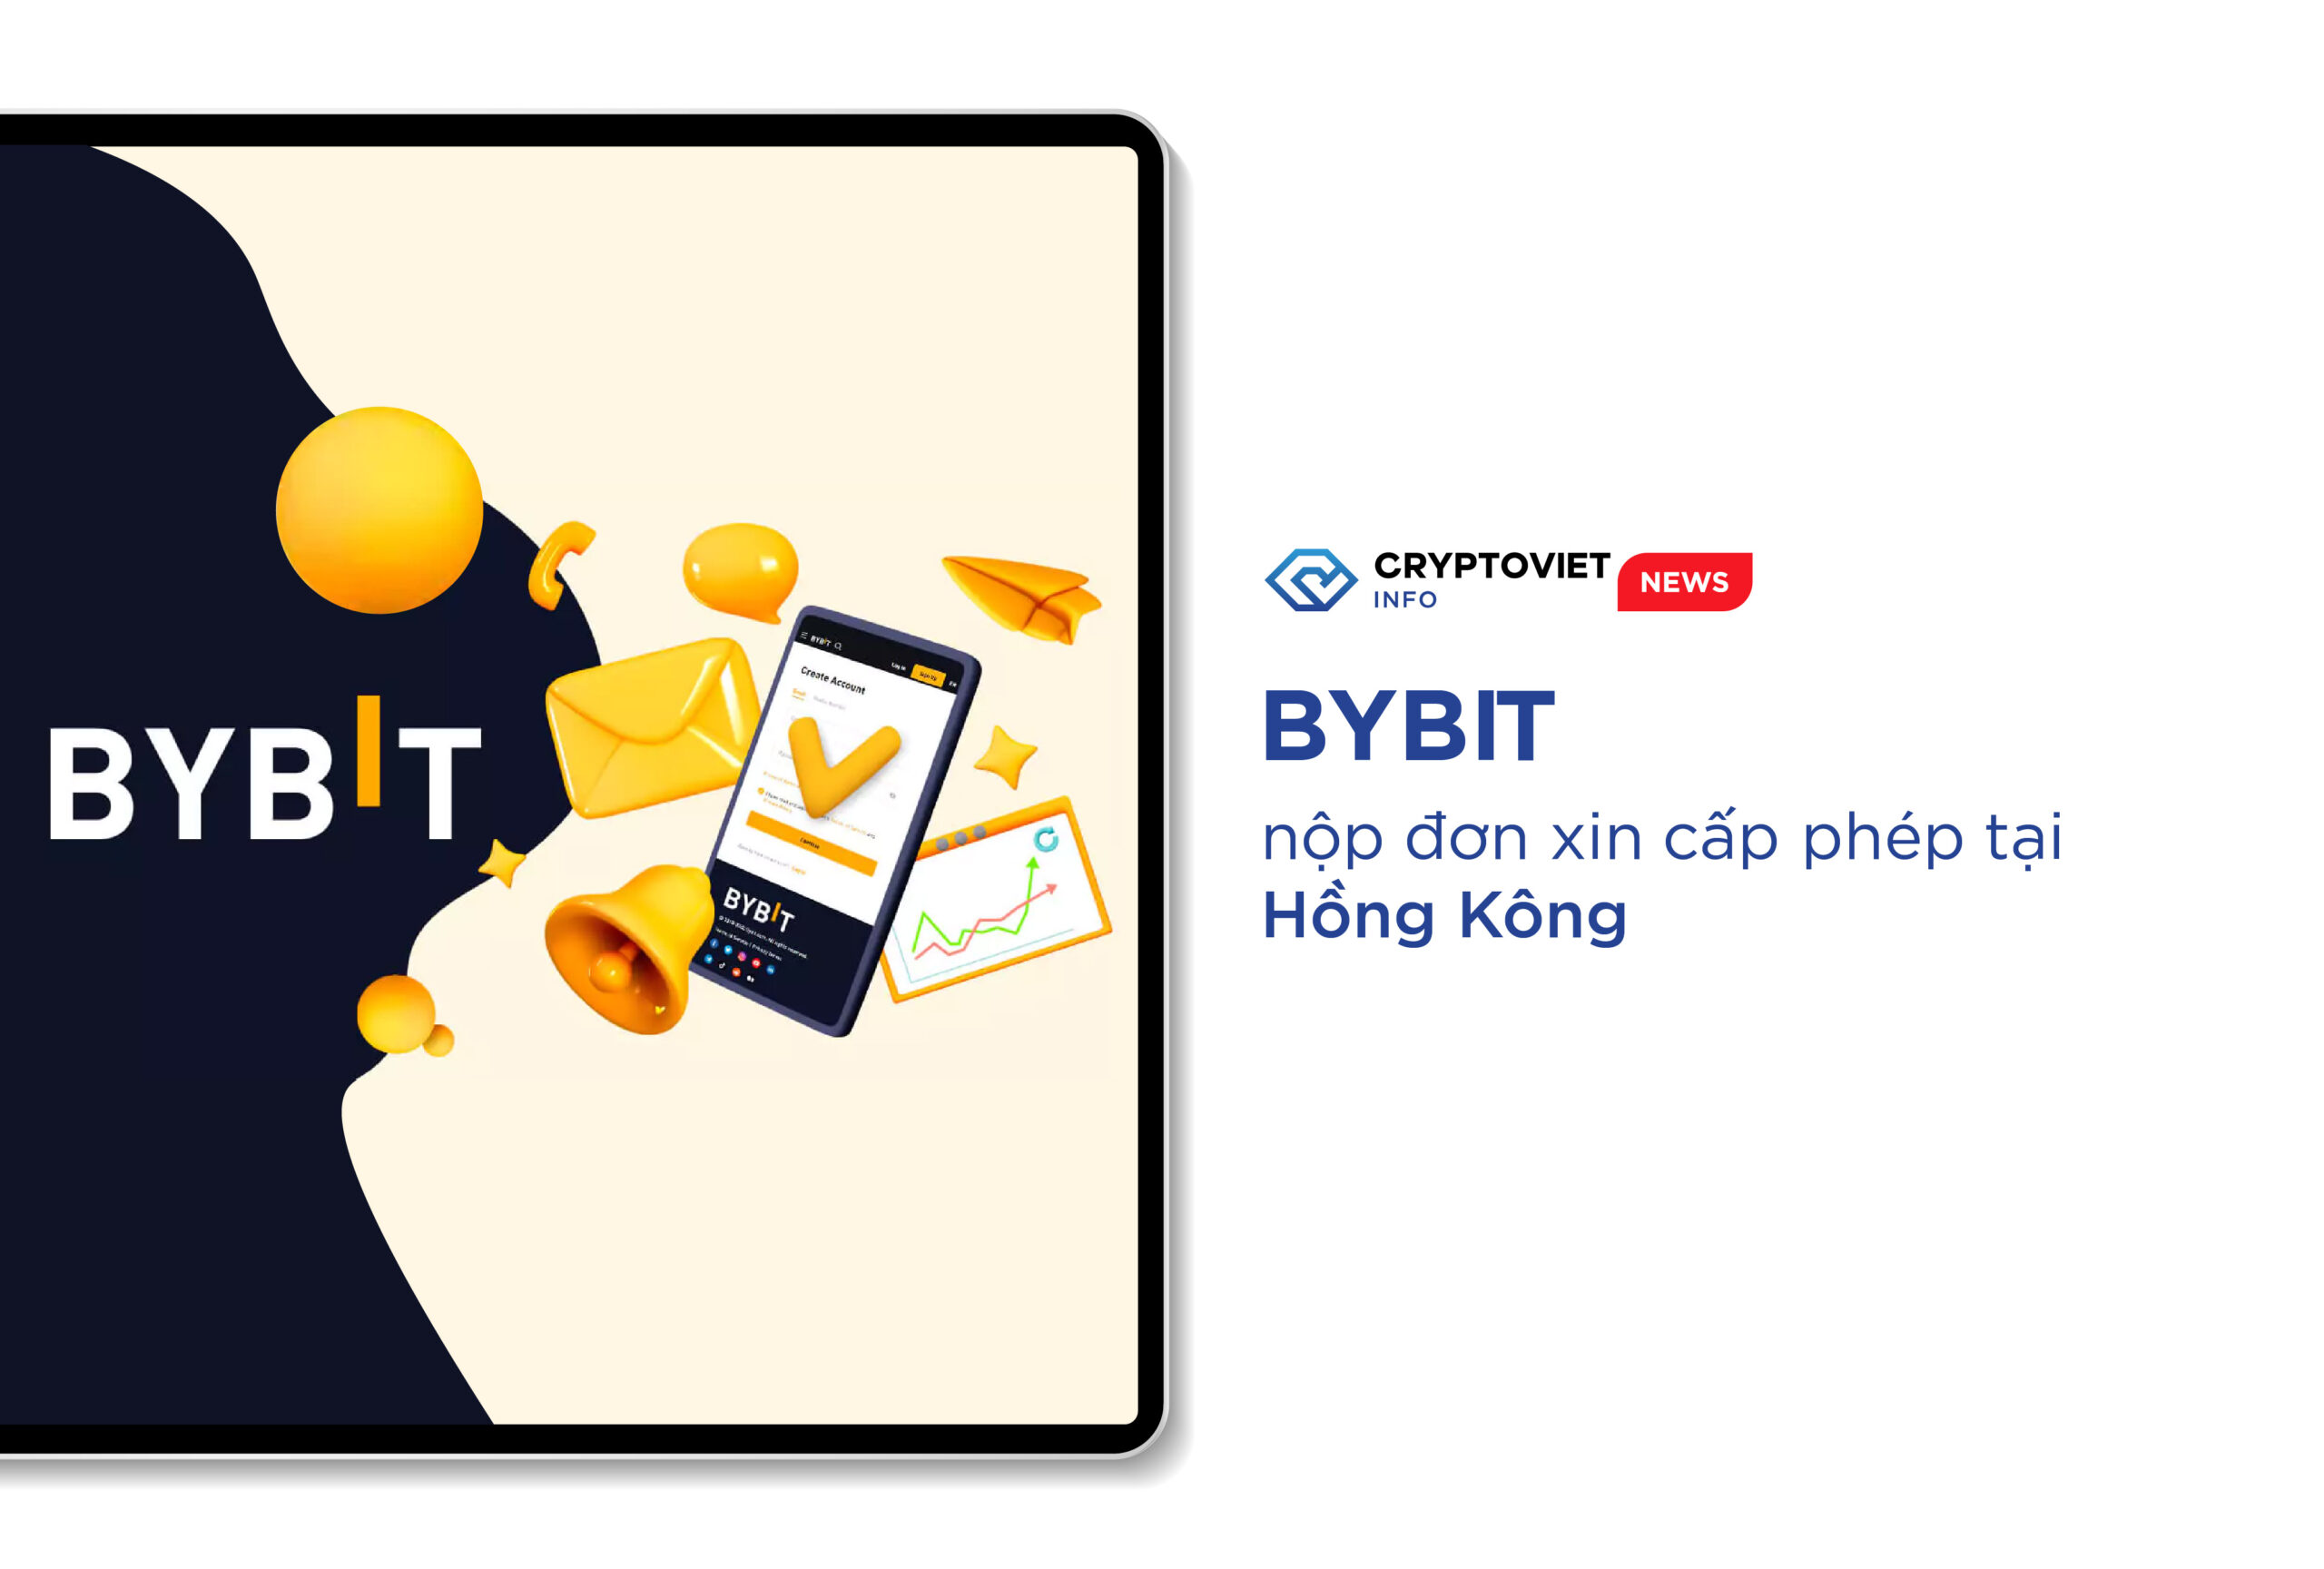 Bybit nộp đơn xin cấp phép tại Hồng Kông